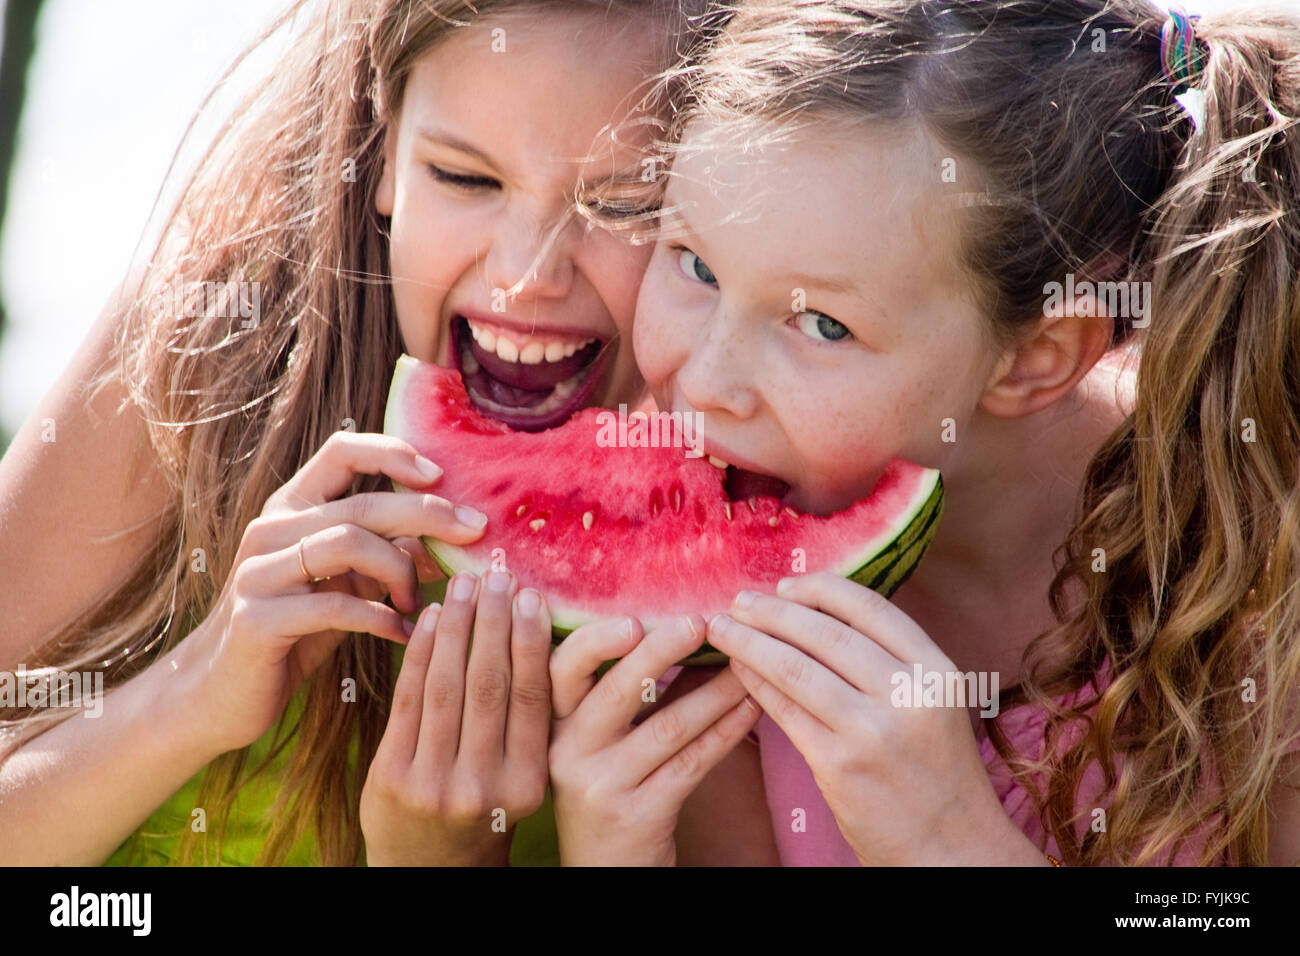 Attack the watermelon Stock Photo